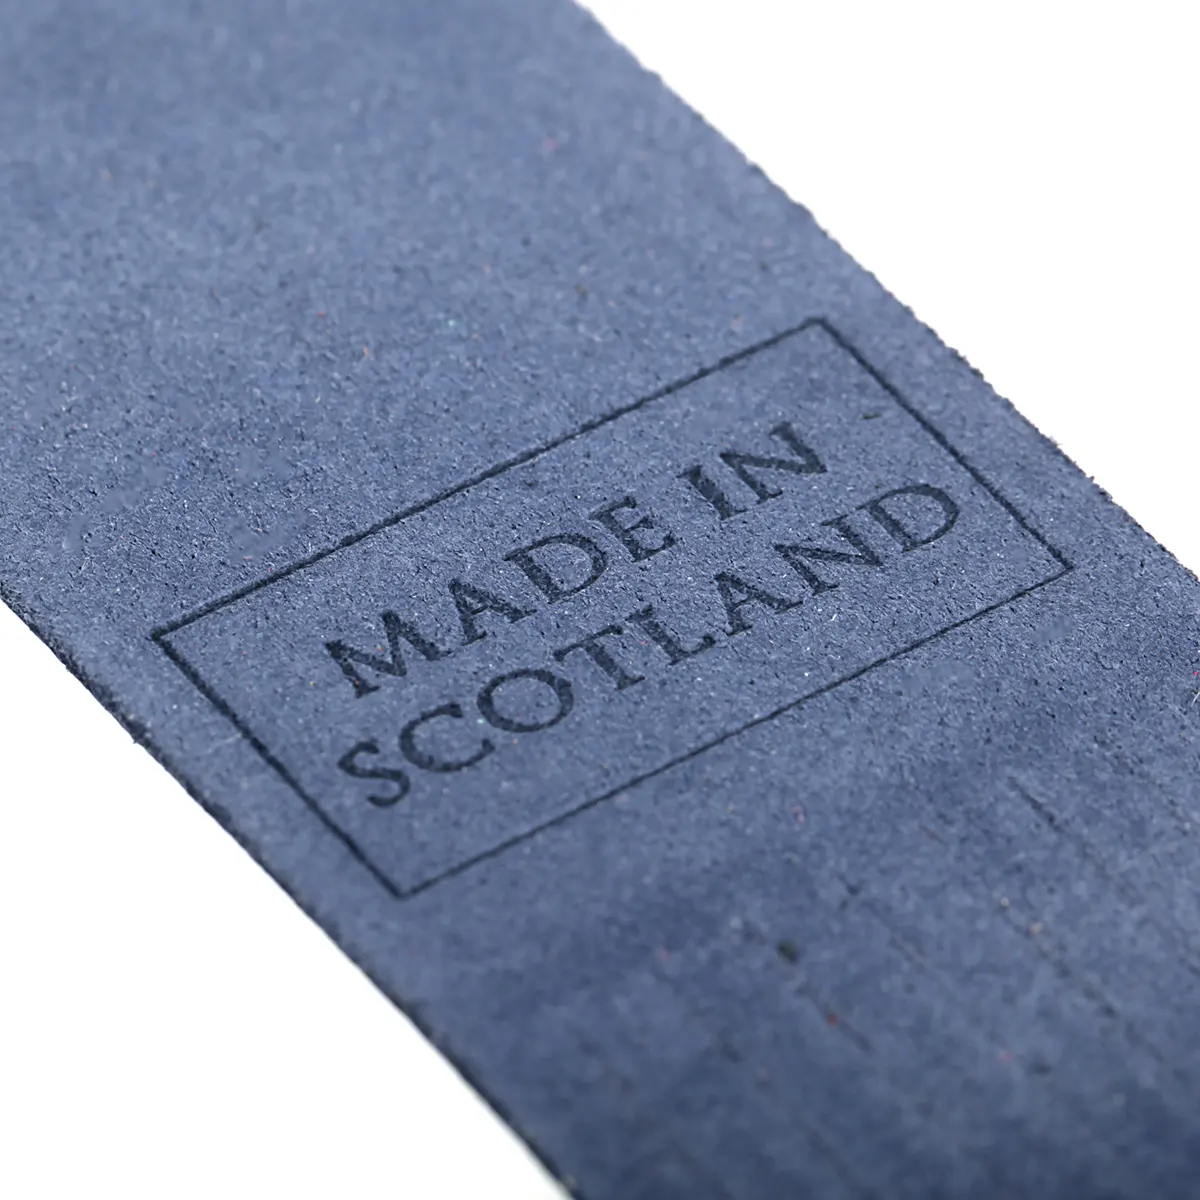 Islay - Lesezeichen aus Leder in Blau - Made in Scotland